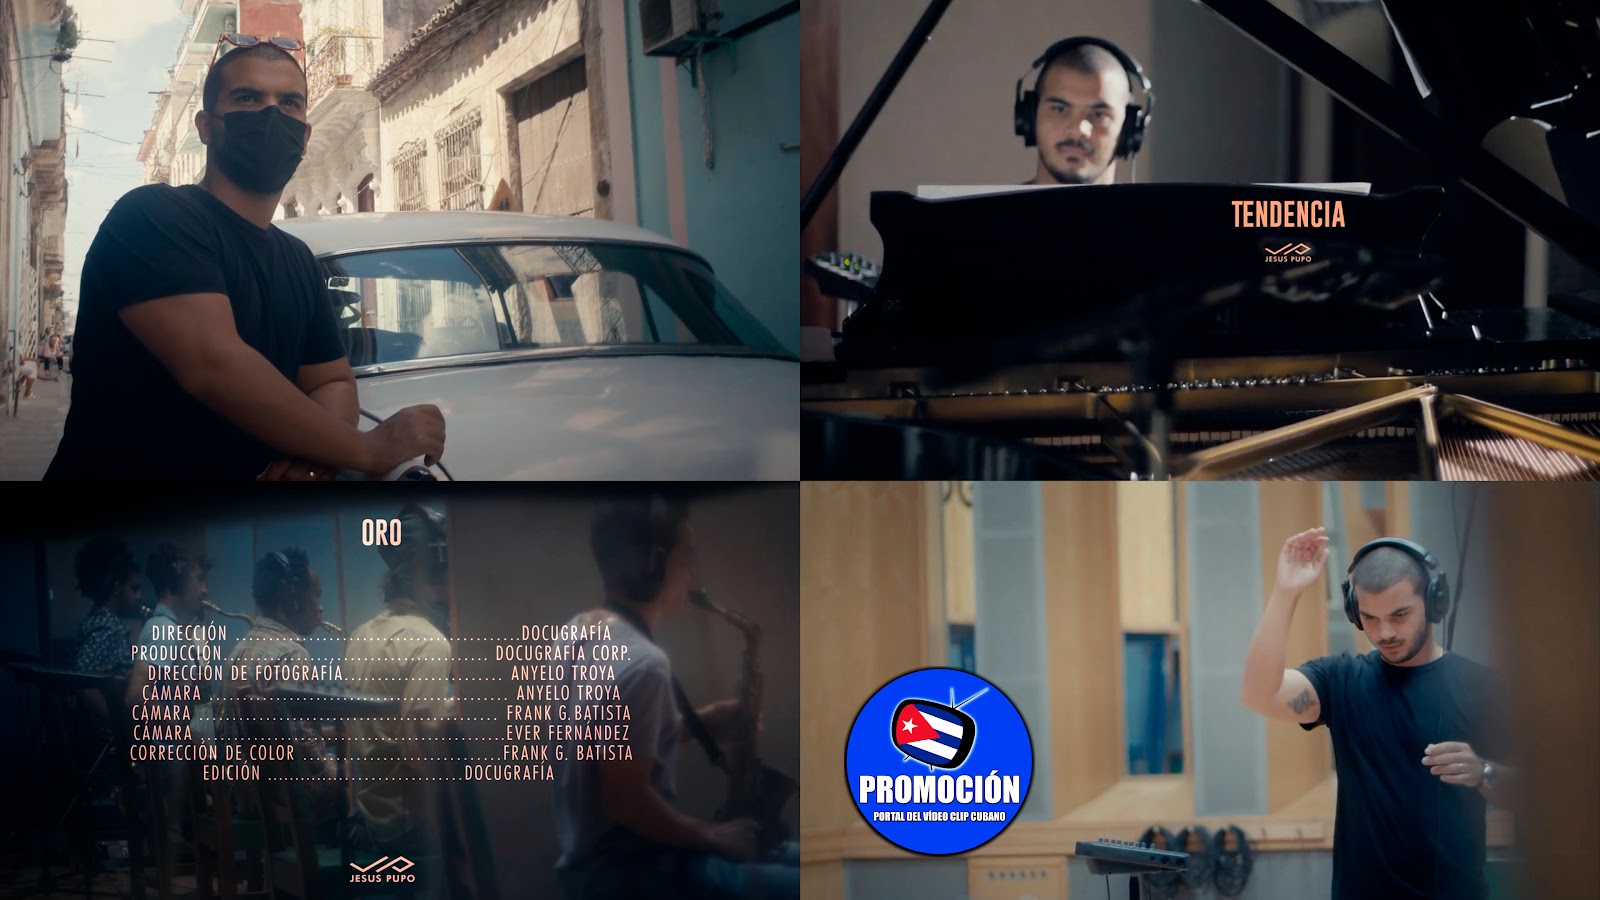 Jesús Pupo - ¨Tendencia¨ - Dirección: Docugrafía. Portal Del Vídeo Clip Cubano. Música instrumental cubana. Piano. EGREM. CUBA.